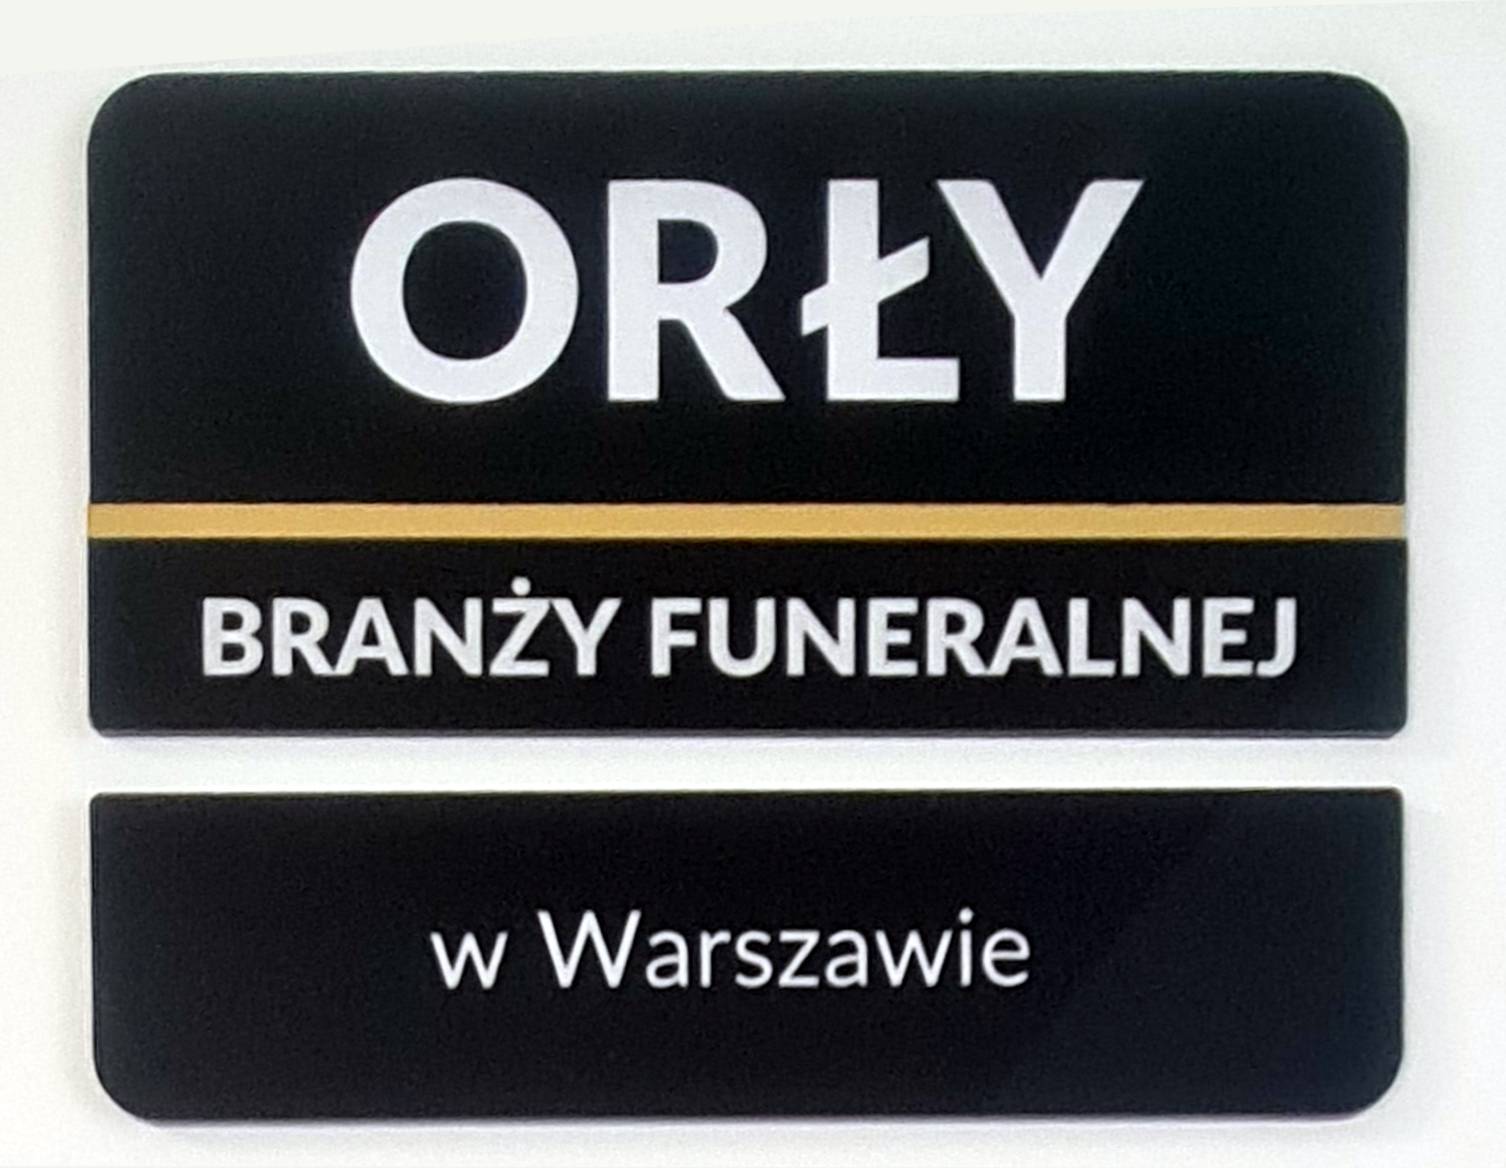 Zostaliśmy laureatem konkursu Orły Branży Funeralnej w Warszawie